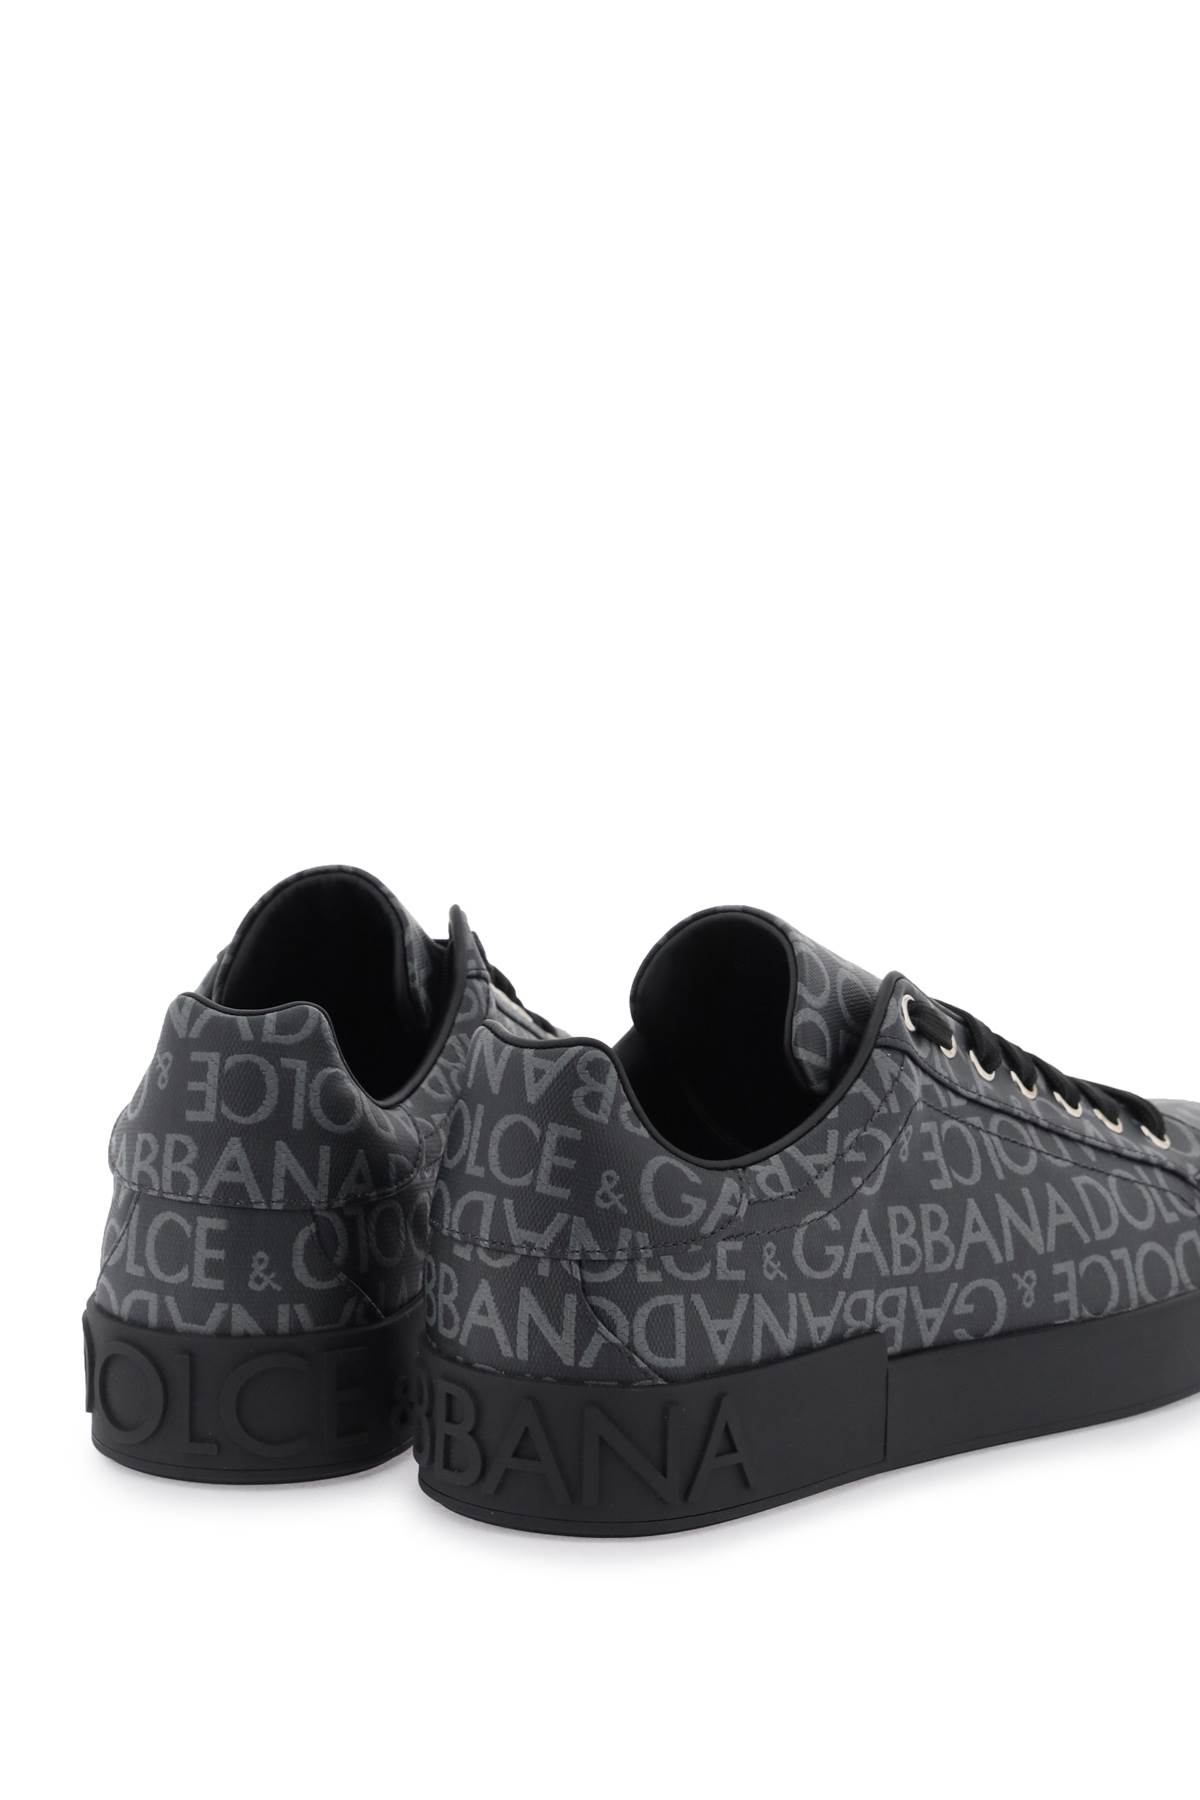 Shop Dolce & Gabbana Portofino Jacquard Sneakers In Nero/grigio